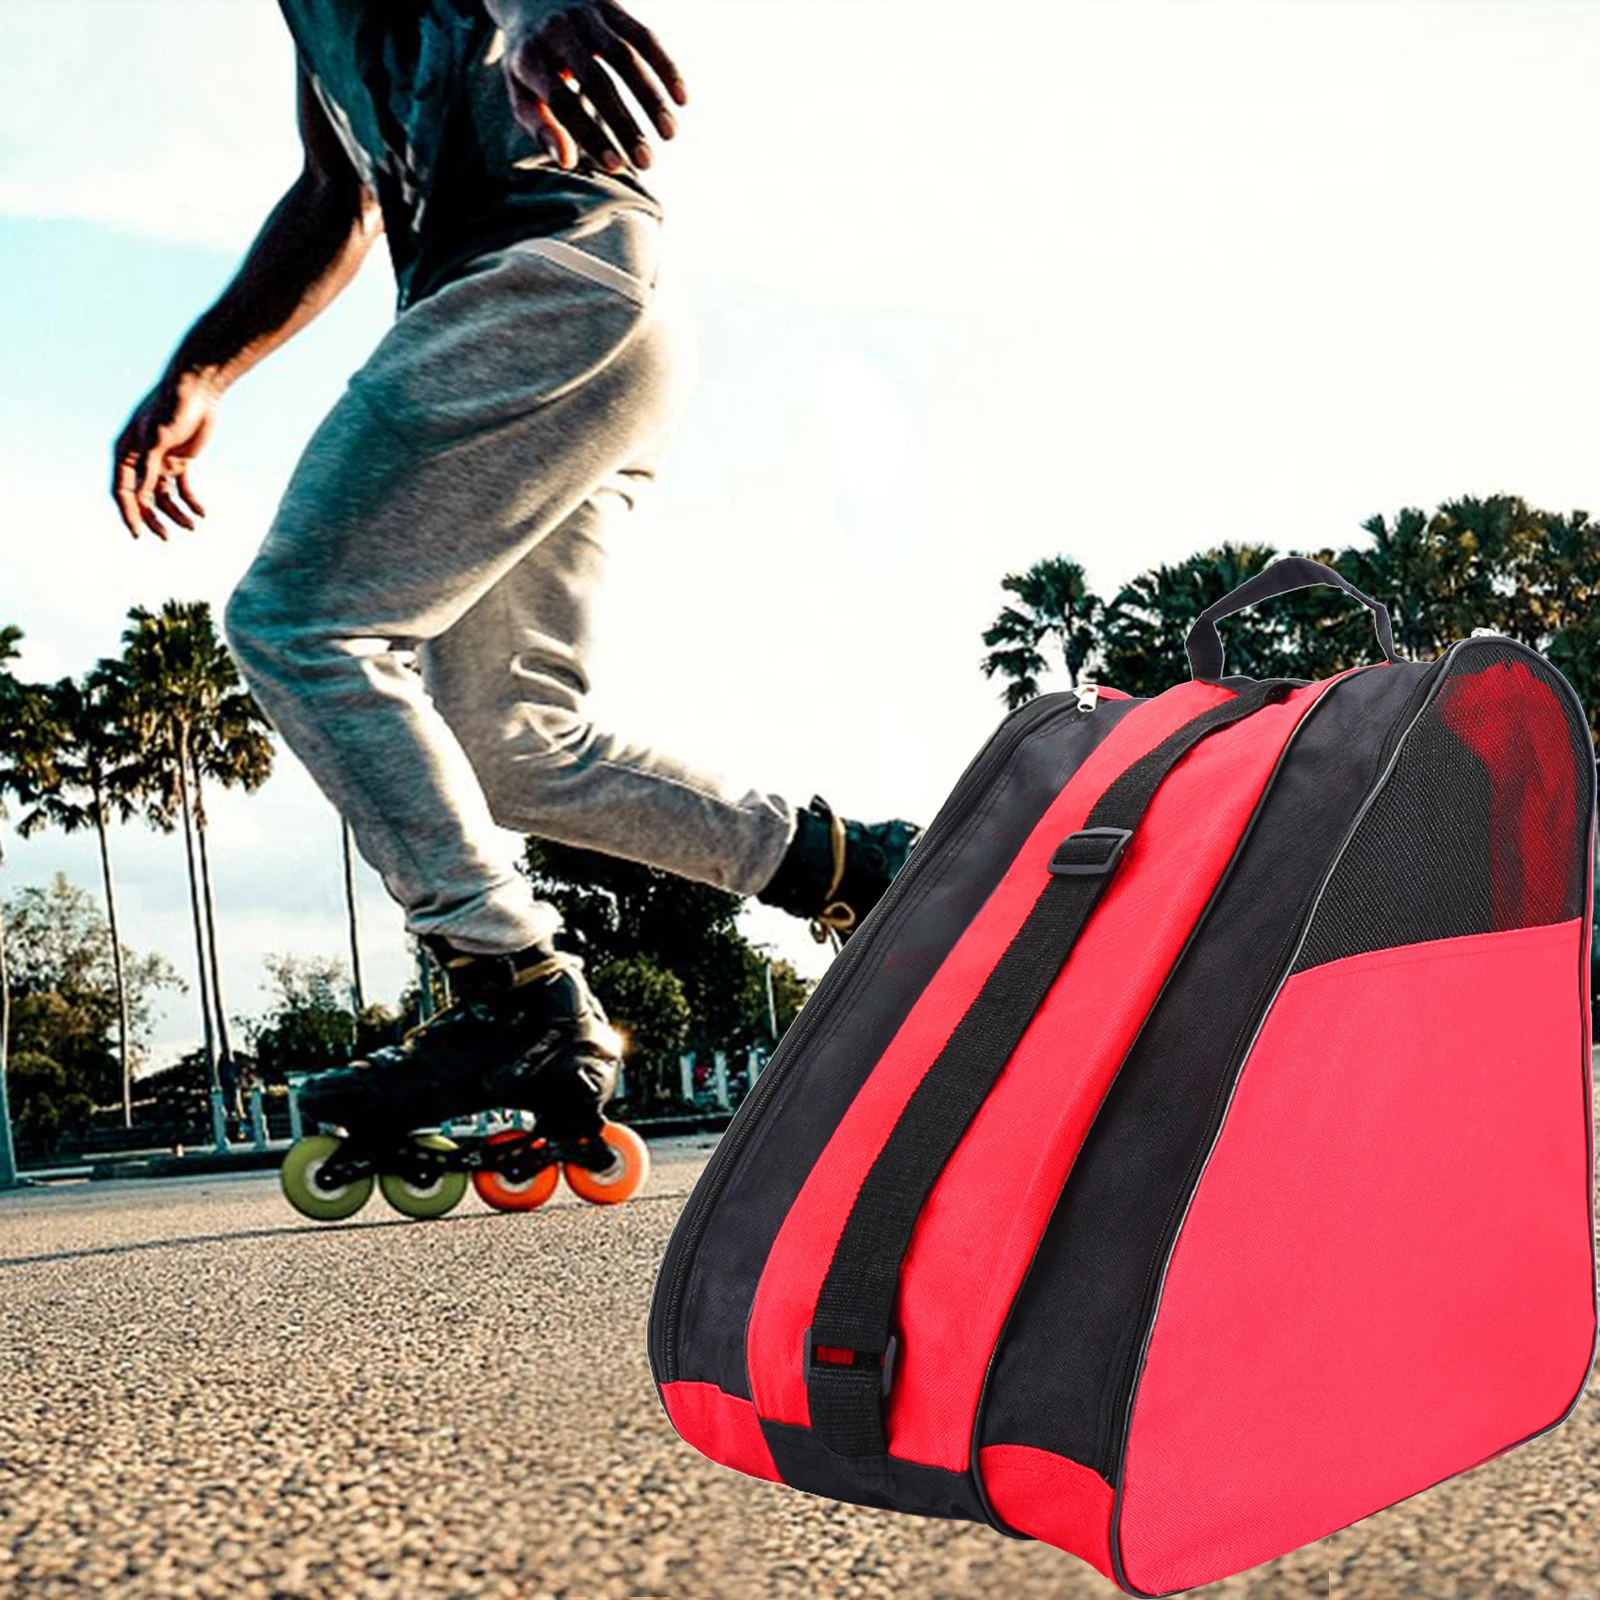 3 Layers Breathable Skate Carry Bag Case Skating Sholder Bag for Kids Roller Skates Inline Skates Ice Skates Accessories